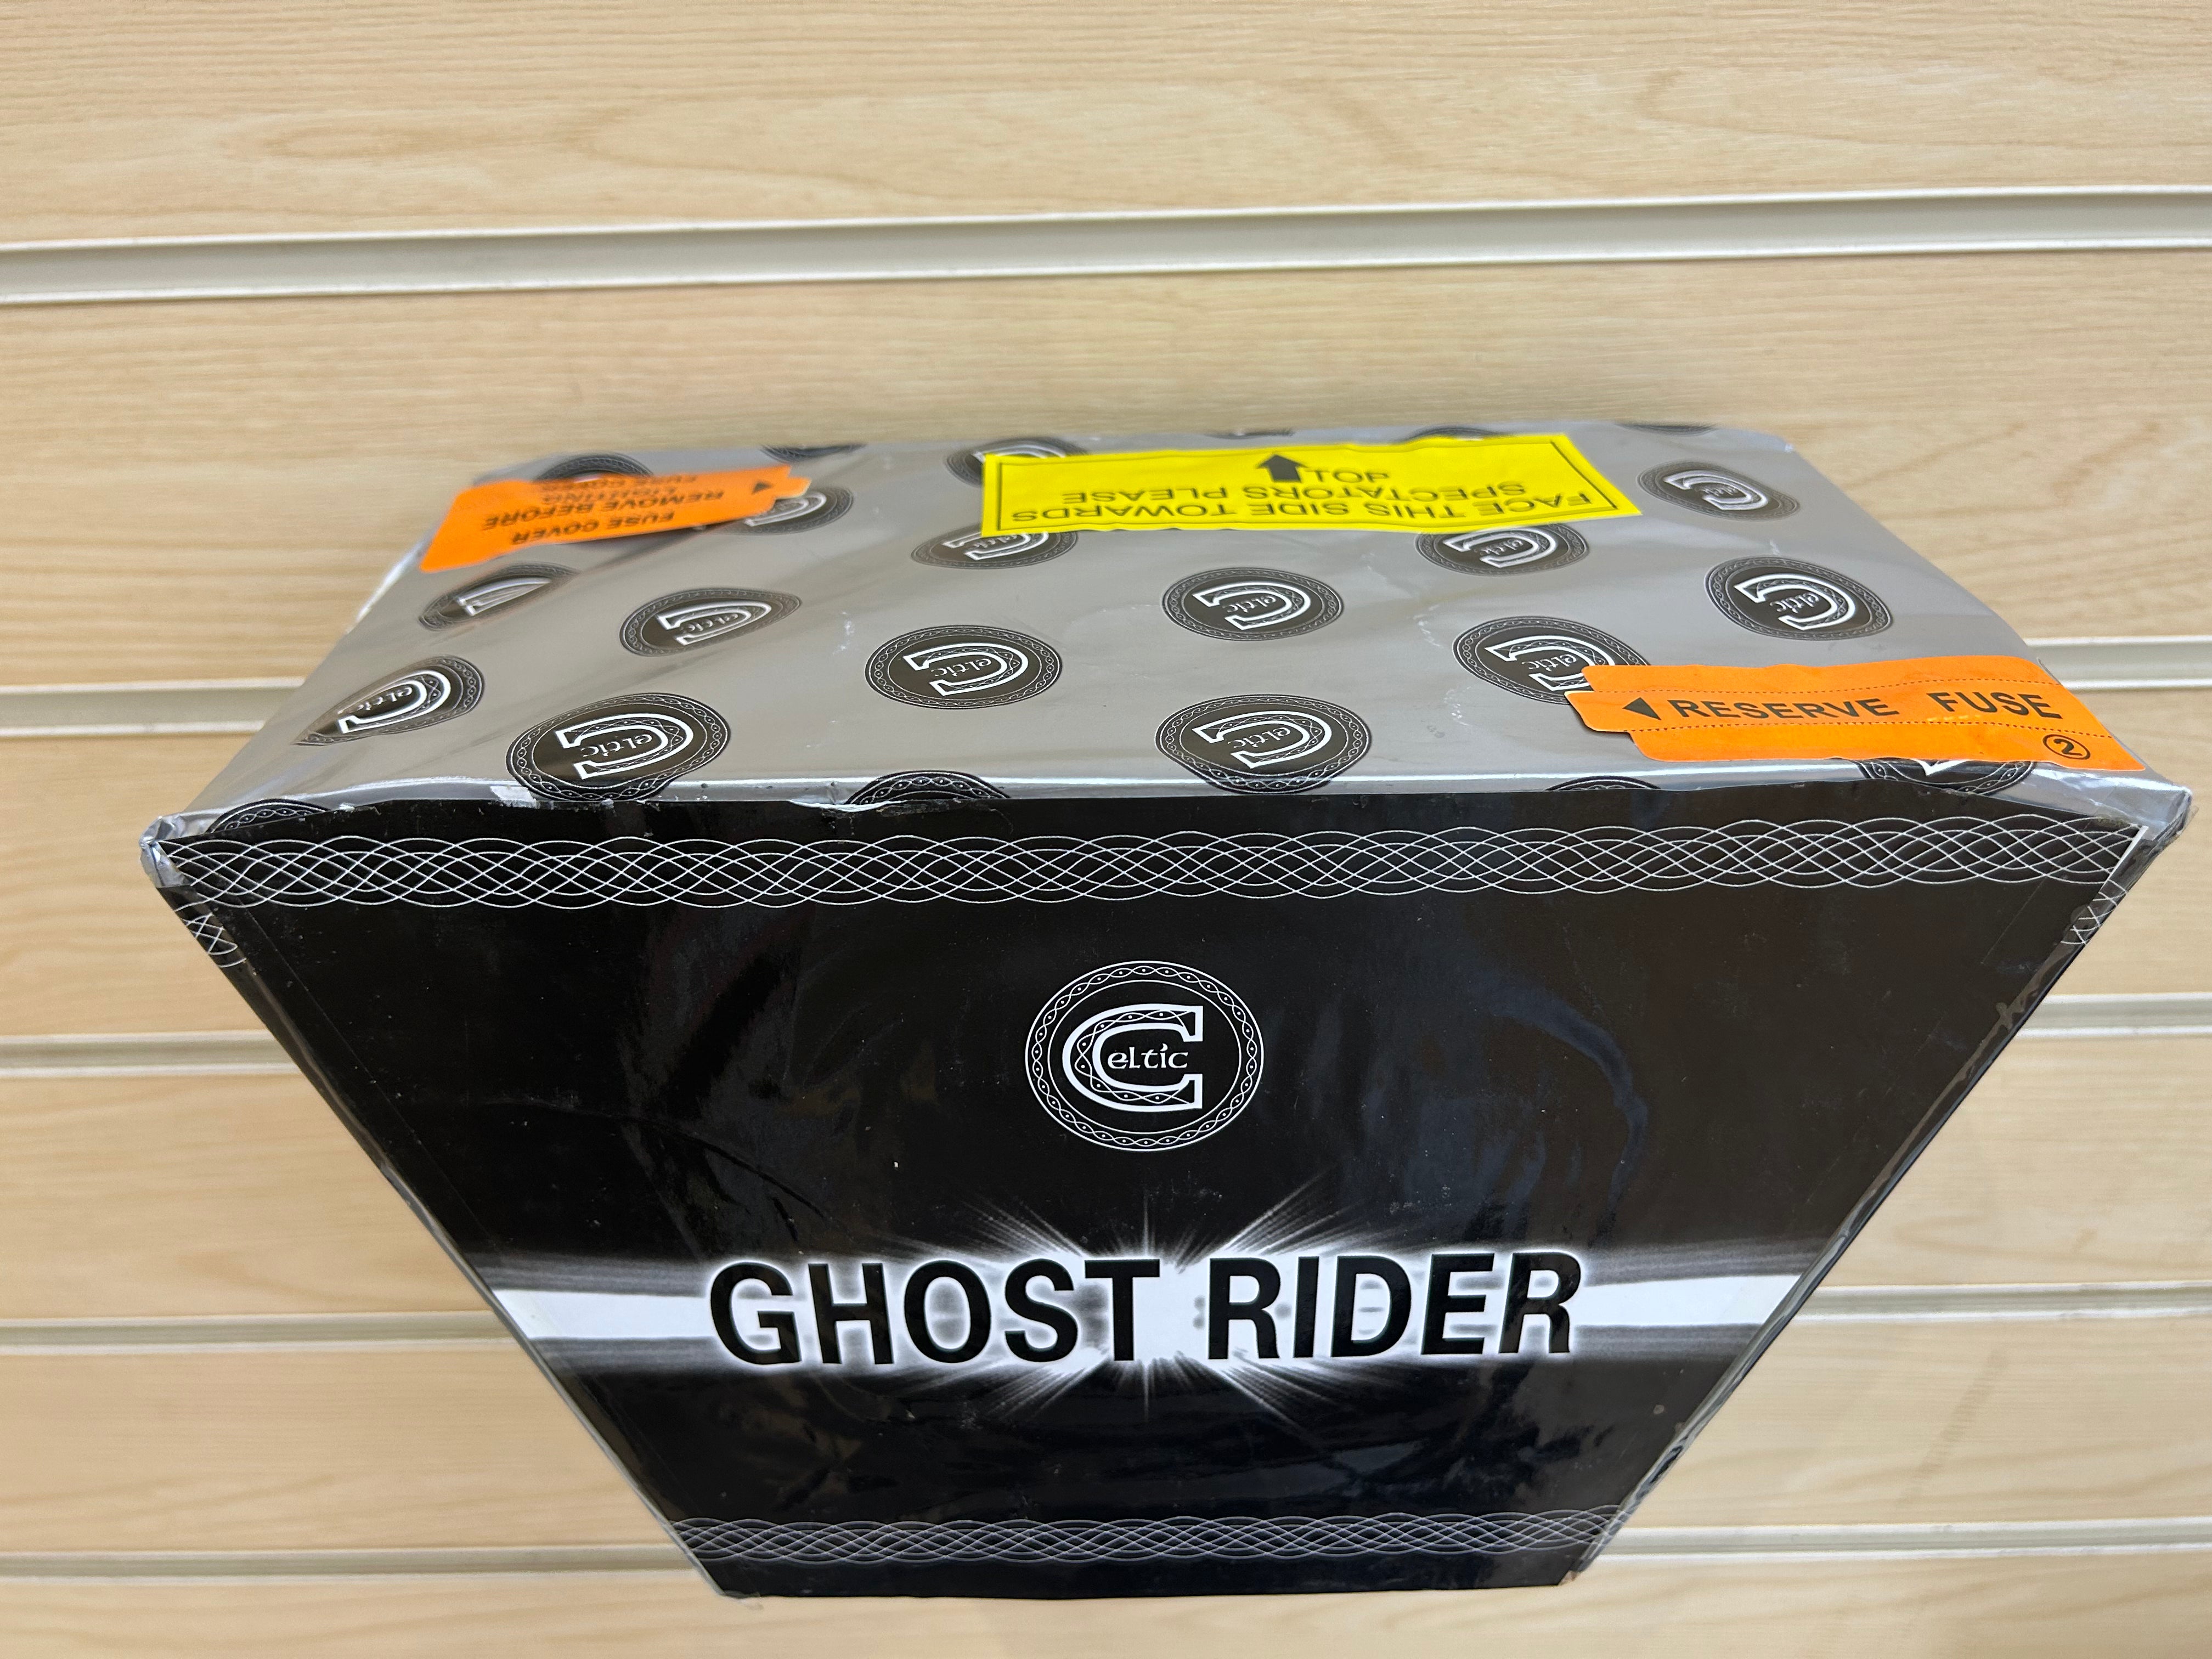 Ghost Rider , A Loud Fan Dump Cake